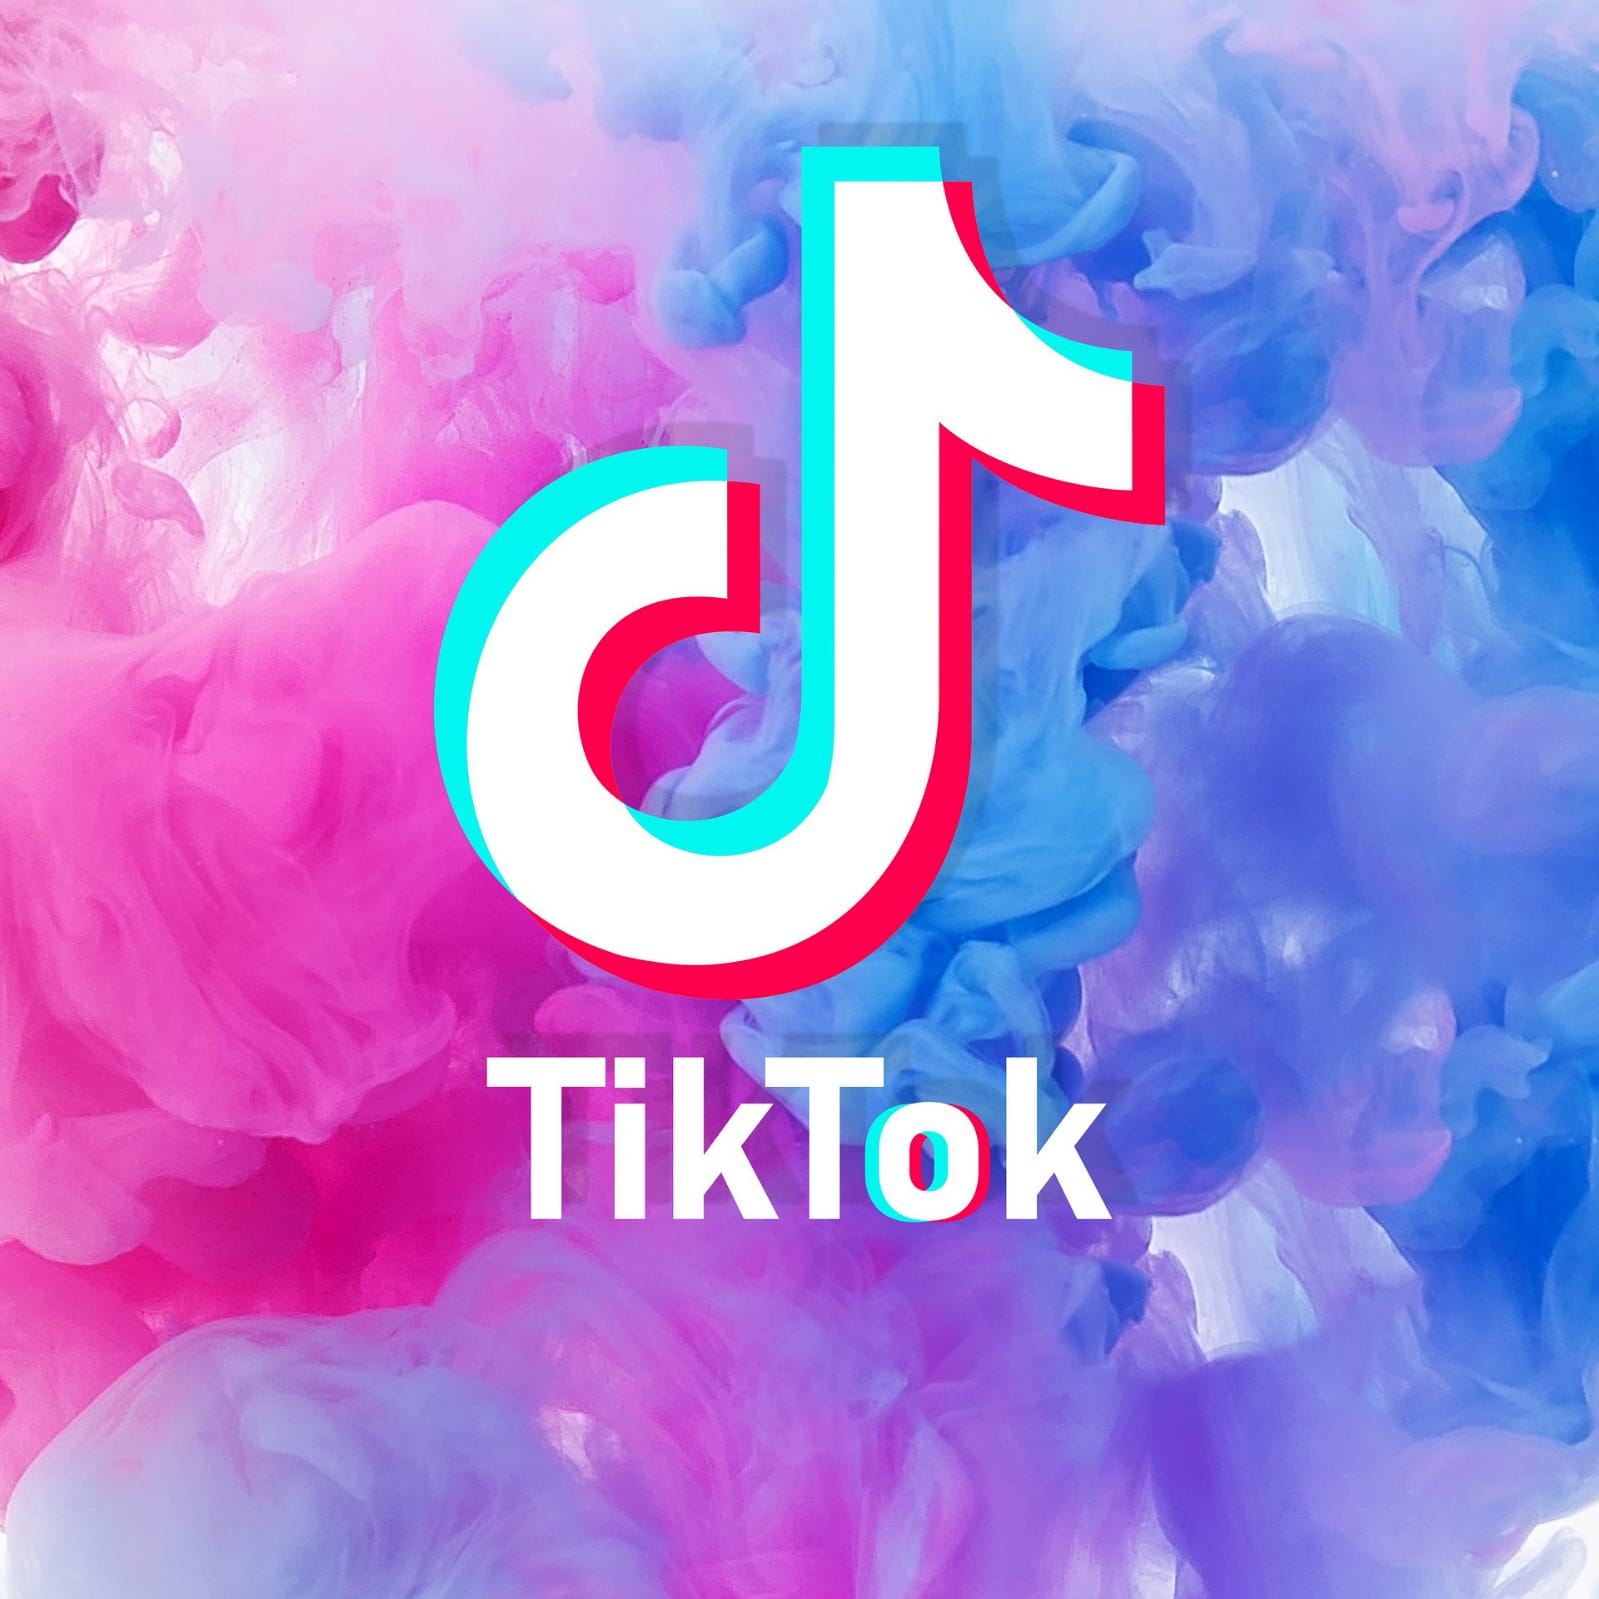 Buy Tiktok Likes And Views - Social Sub